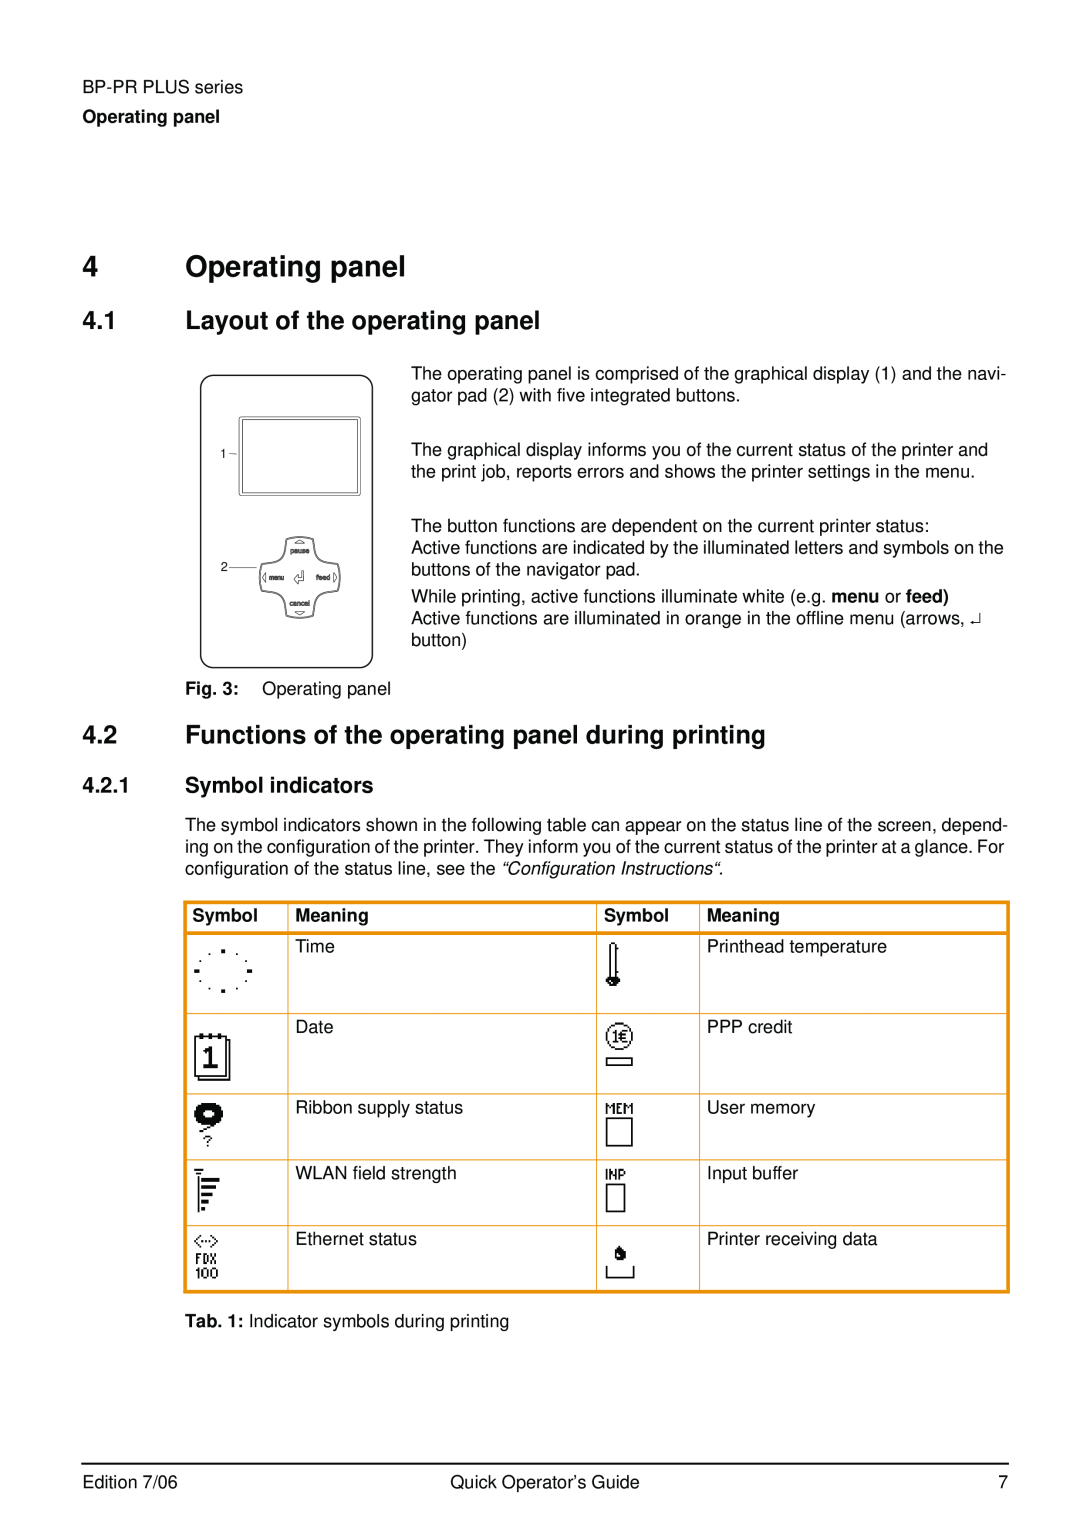 Brady BP-PR PLUS Series Operating panel, Layout of the operating panel, Functions of the operating panel during printing 